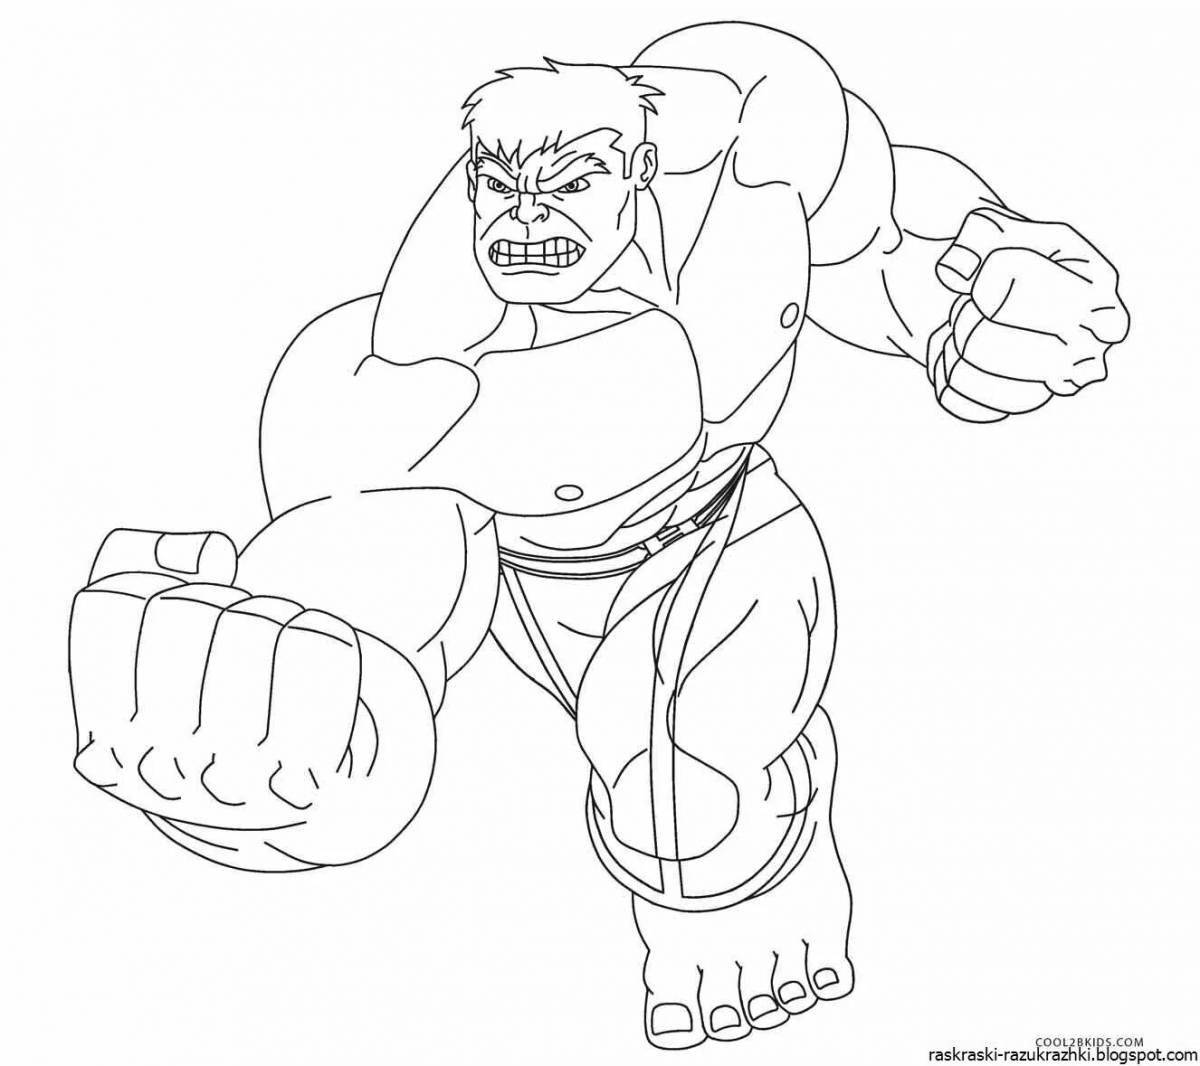 Dazzling coloring page hulk man